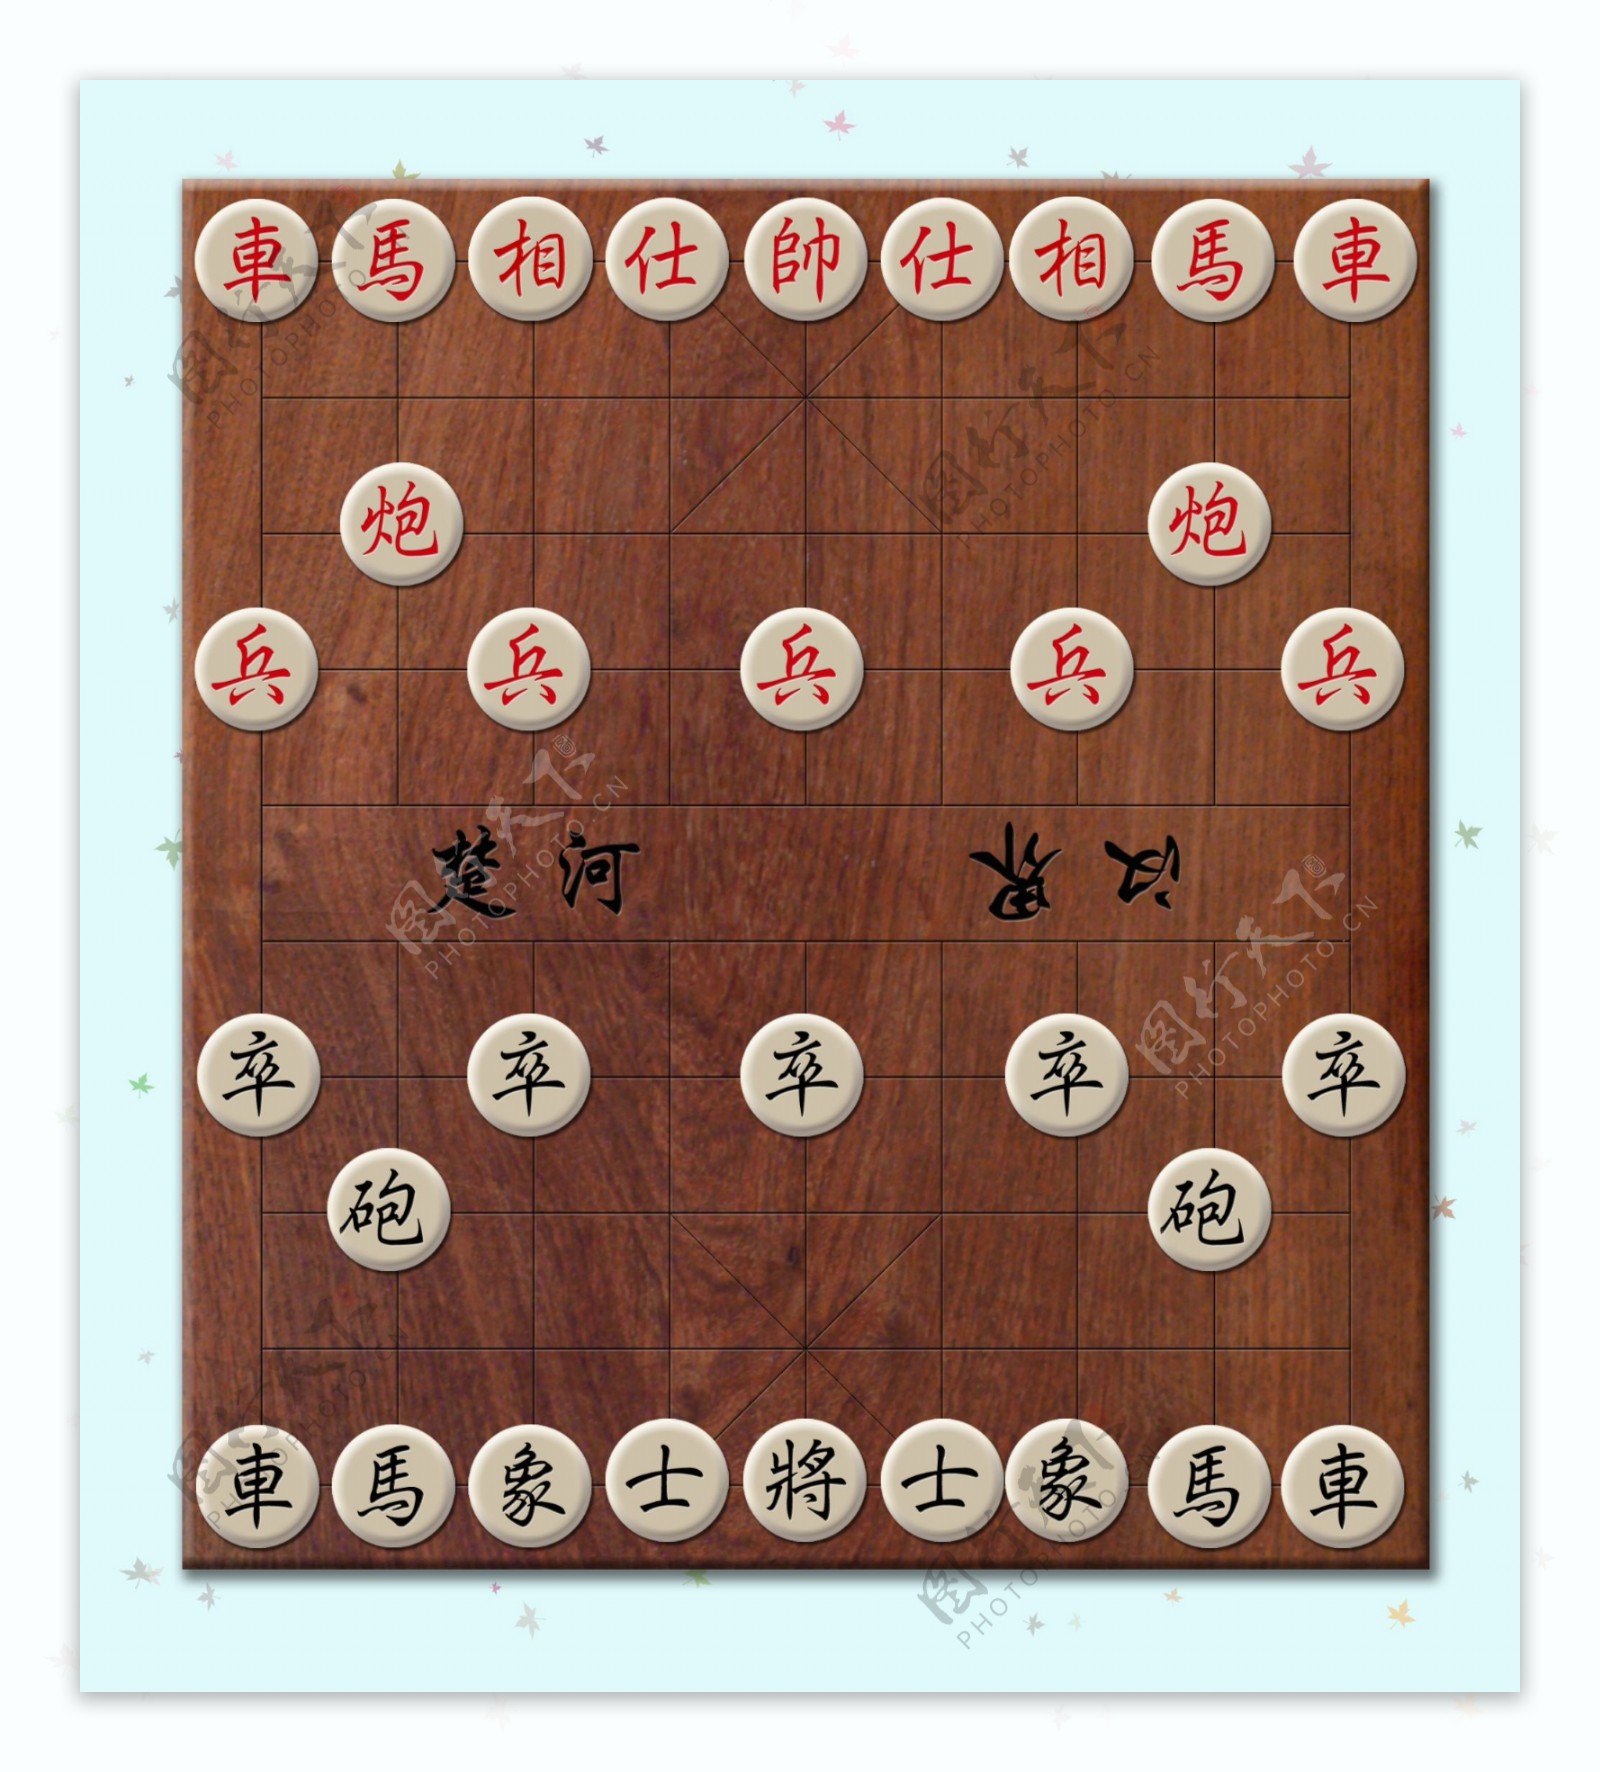 玛瑙中国象棋图片